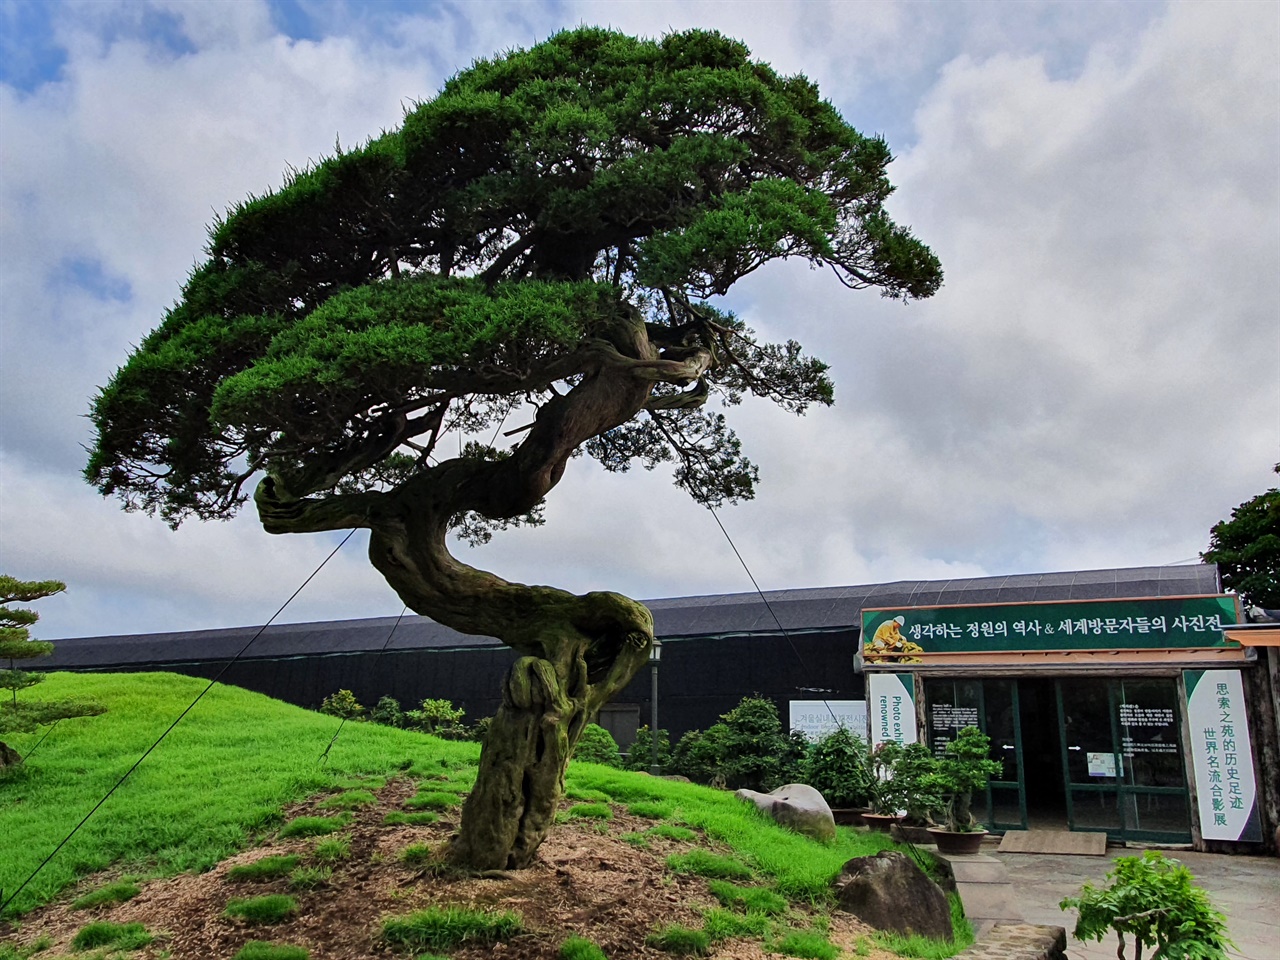 특히 일본인들이 극찬하는 700년 이상 된 향나무는  생각하는 정원의 보물과도 같은 나무다. 